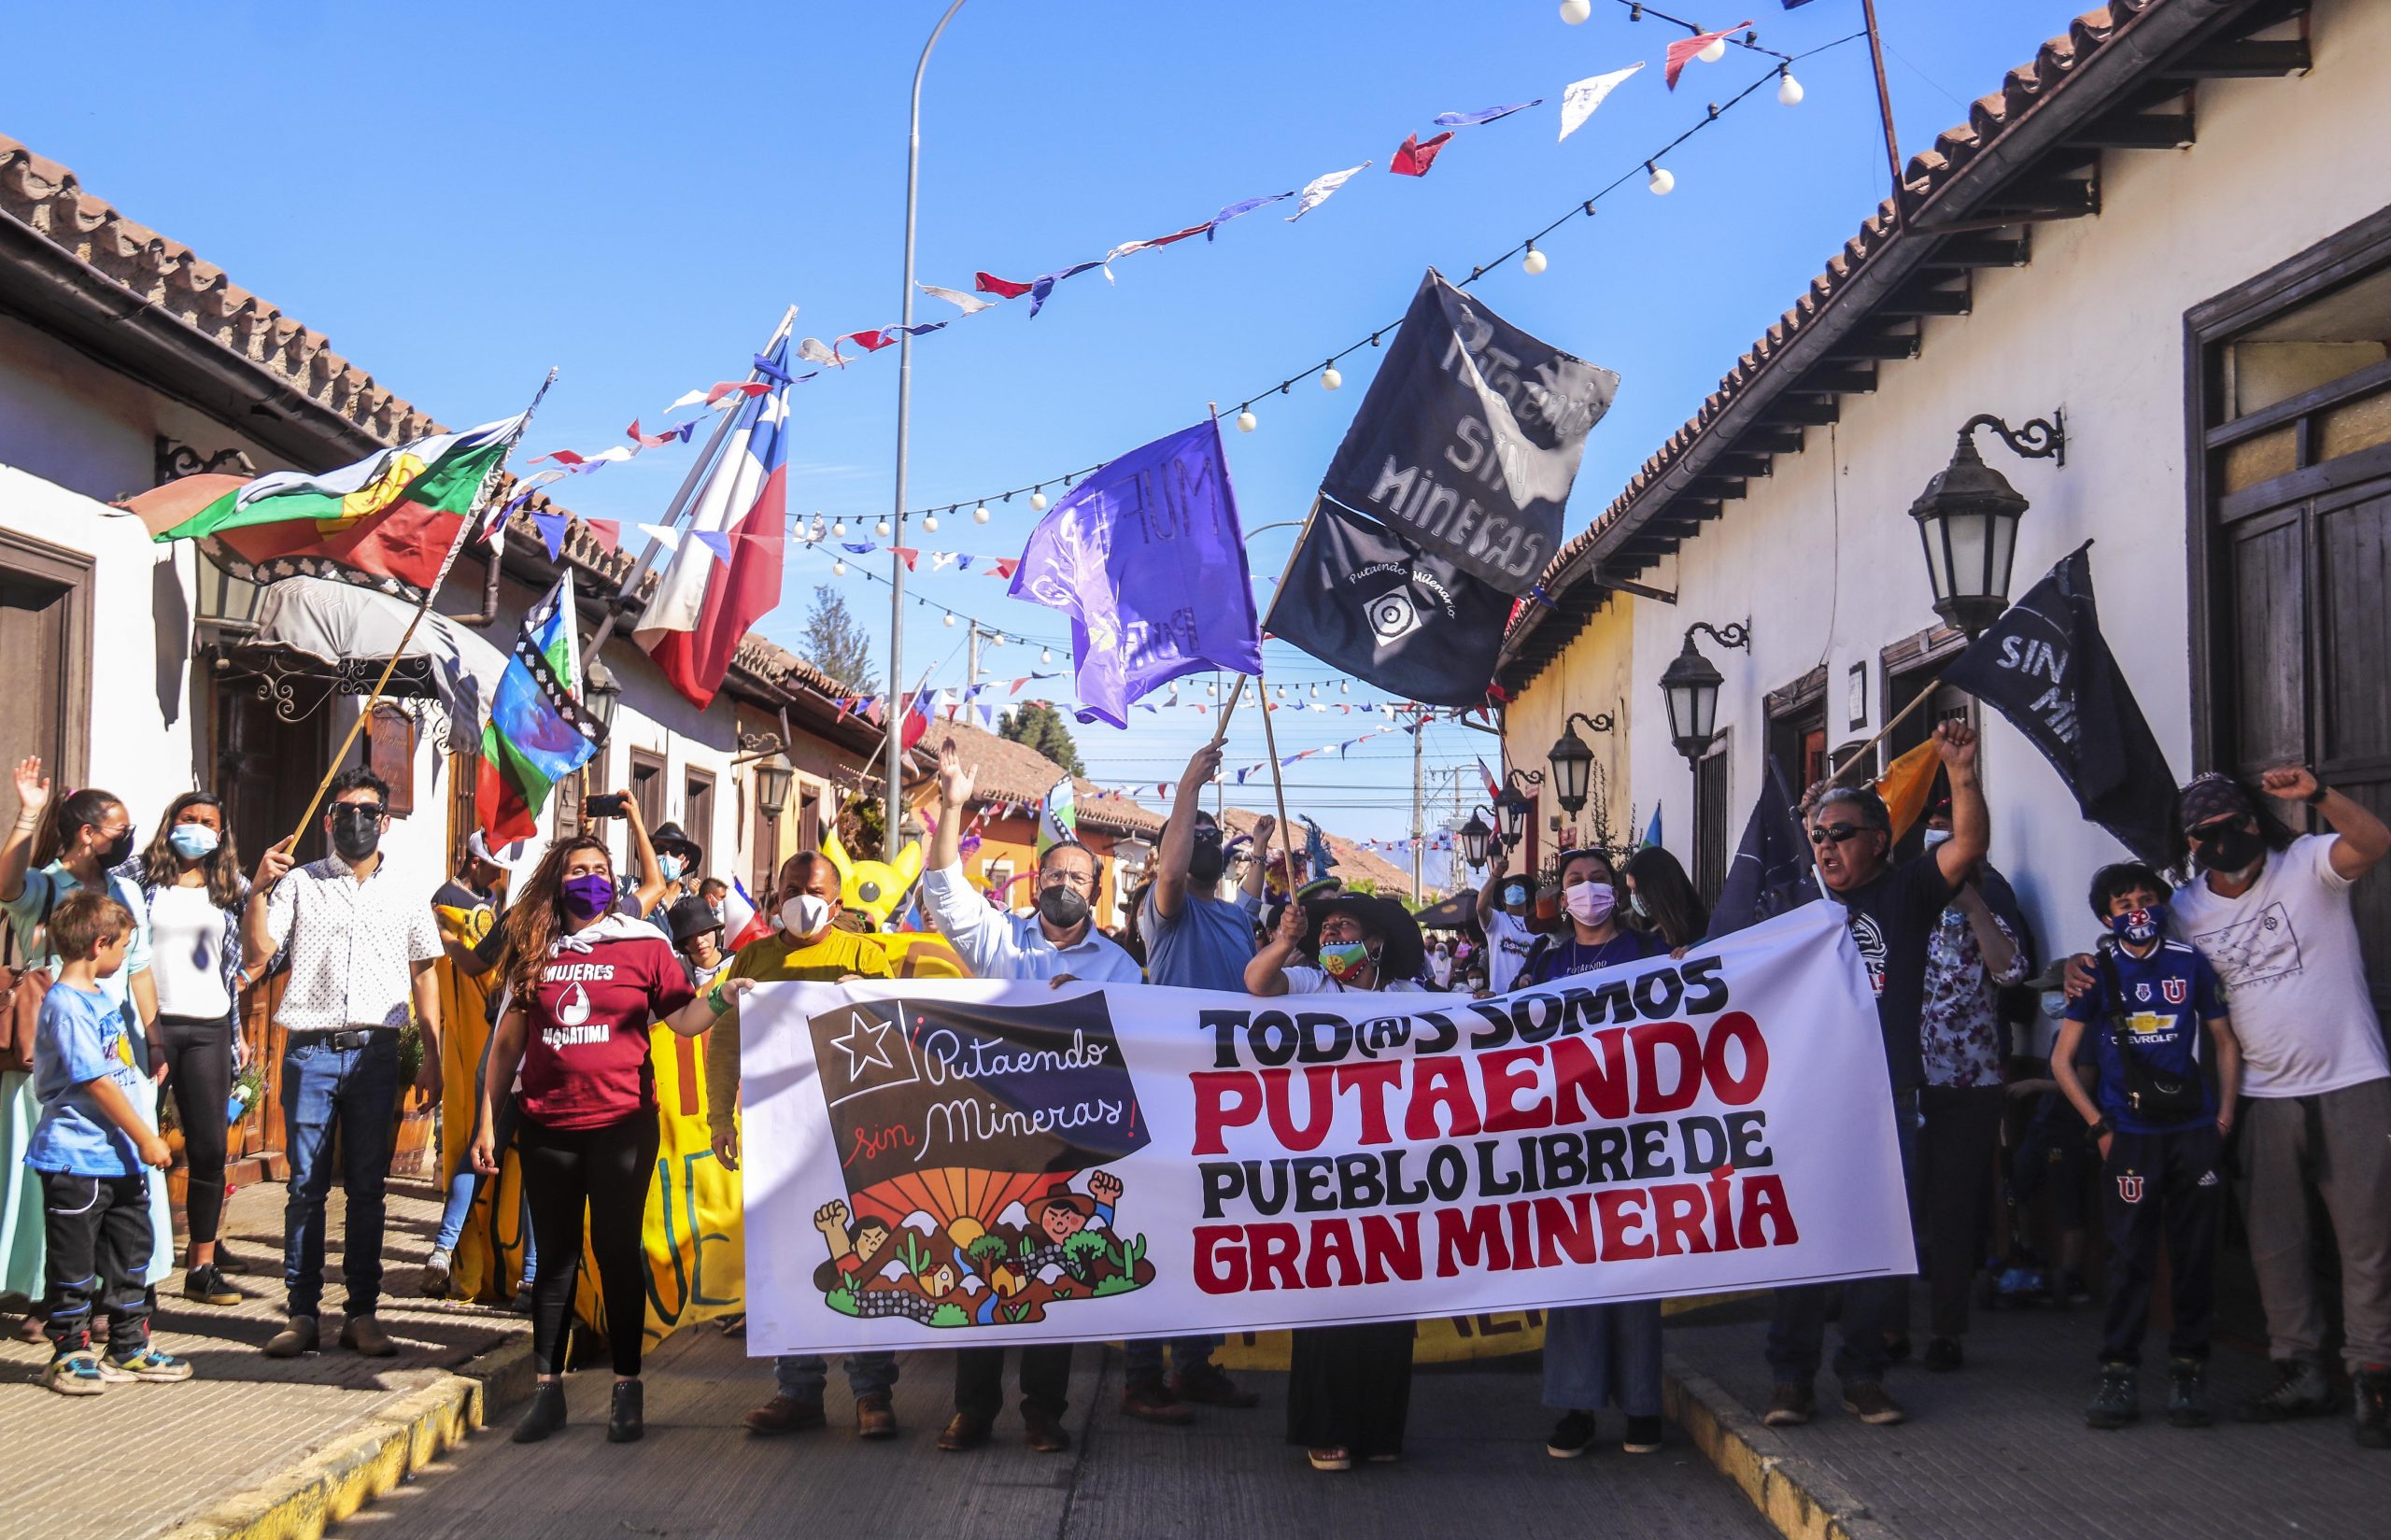 PUTAENDO: Municipio denuncia que minera Vizcachitas Holding inició obras sin autorización en sector de Las Tejas